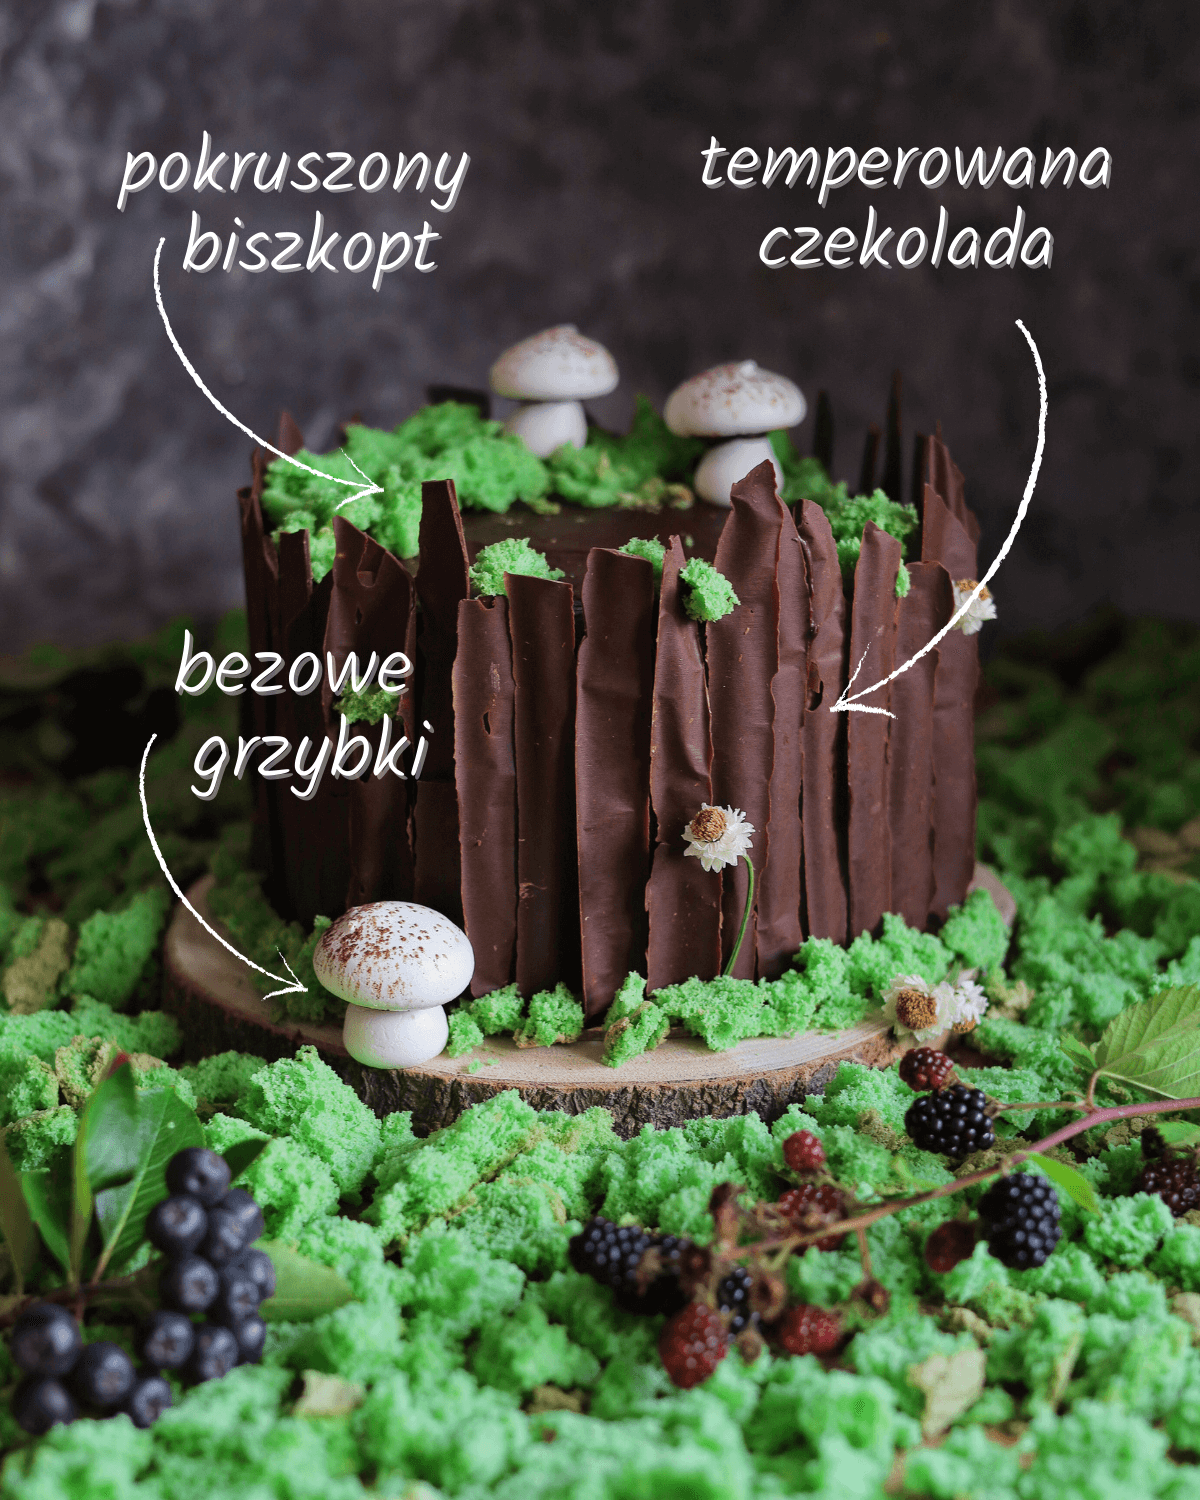 leśny tort w kształcie pnia, kora z temperowanej czekolady, pokruszony biszkopt, bezowe grzybki